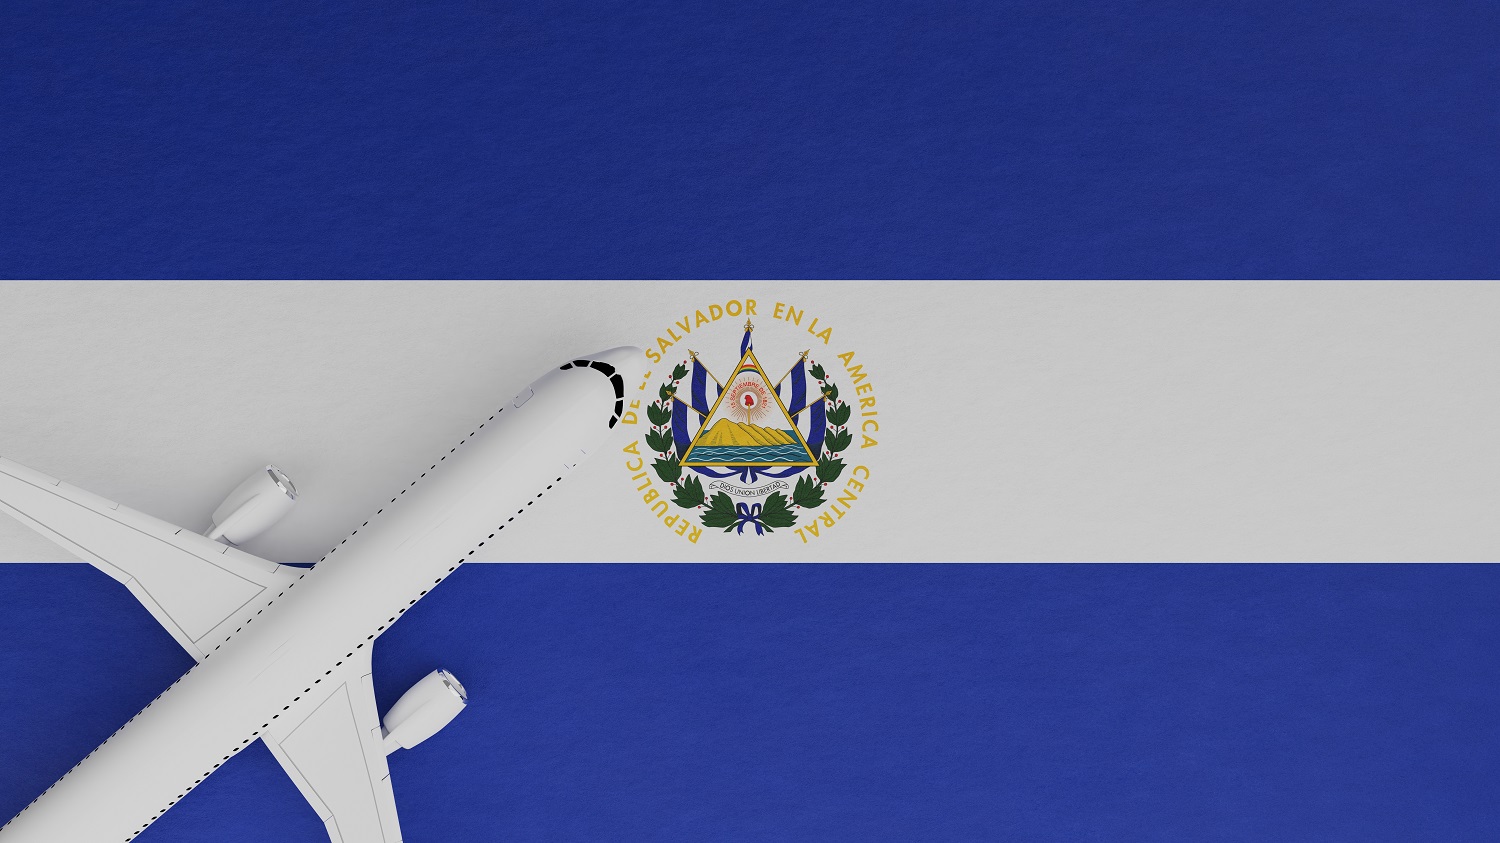 Một cái nhìn từ trên xuống của một chiếc máy bay trên đỉnh quốc kỳ El Salvador.